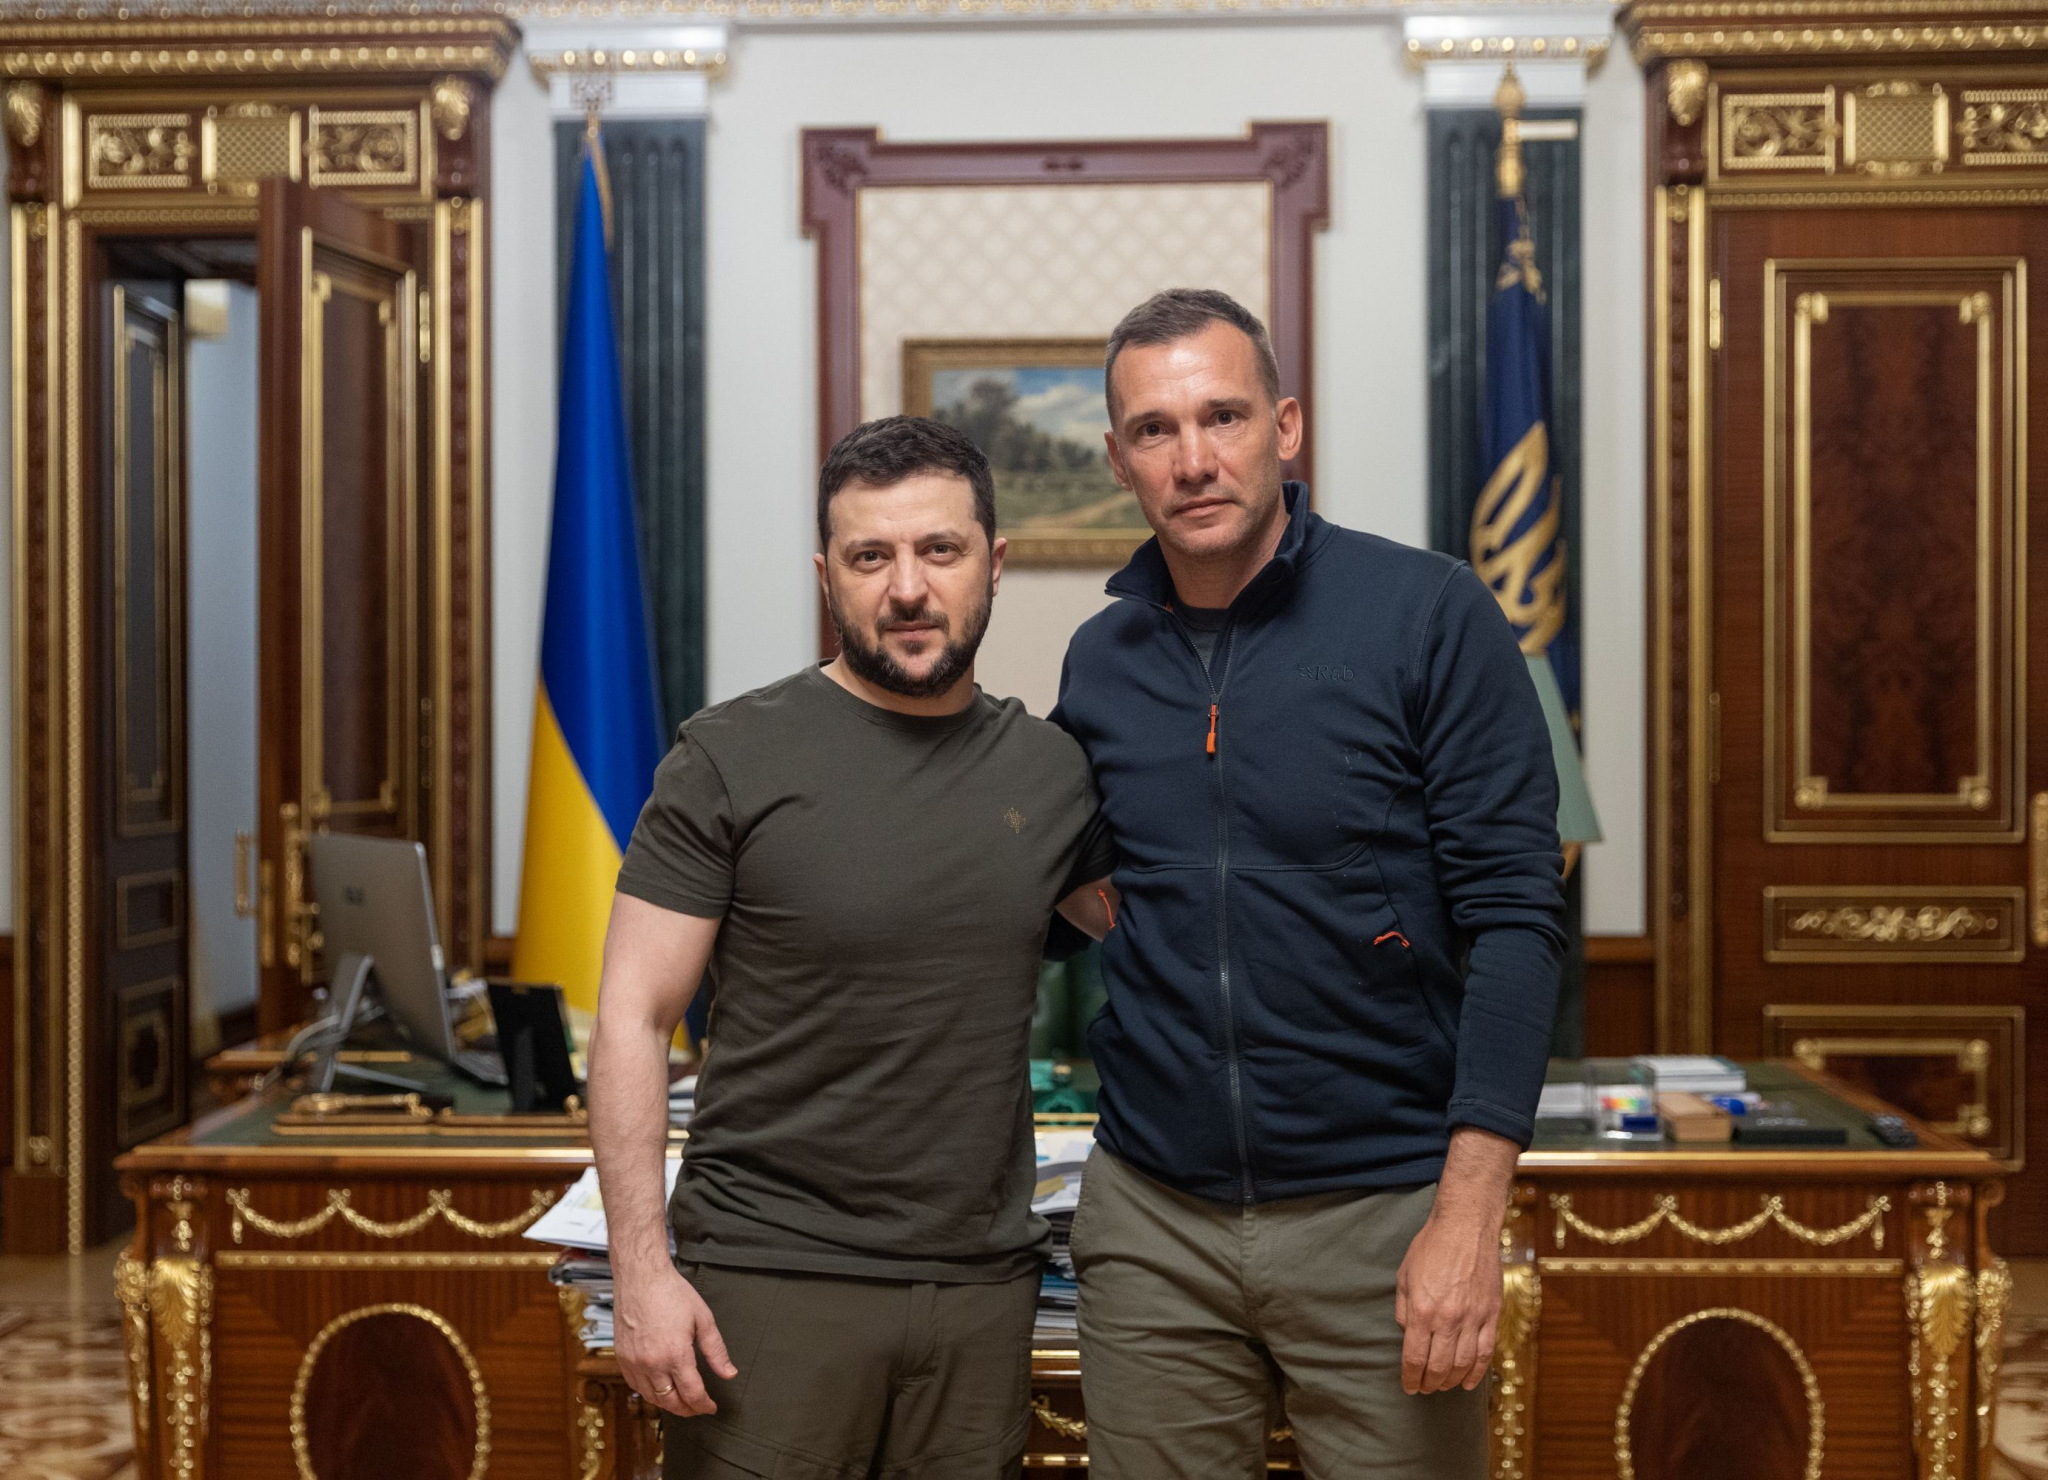 Ukraine's President Volodymyr Zelenskyy, left, confirmed Andriy Shevchenko as the first ambassador for the fundraising platform ©United24